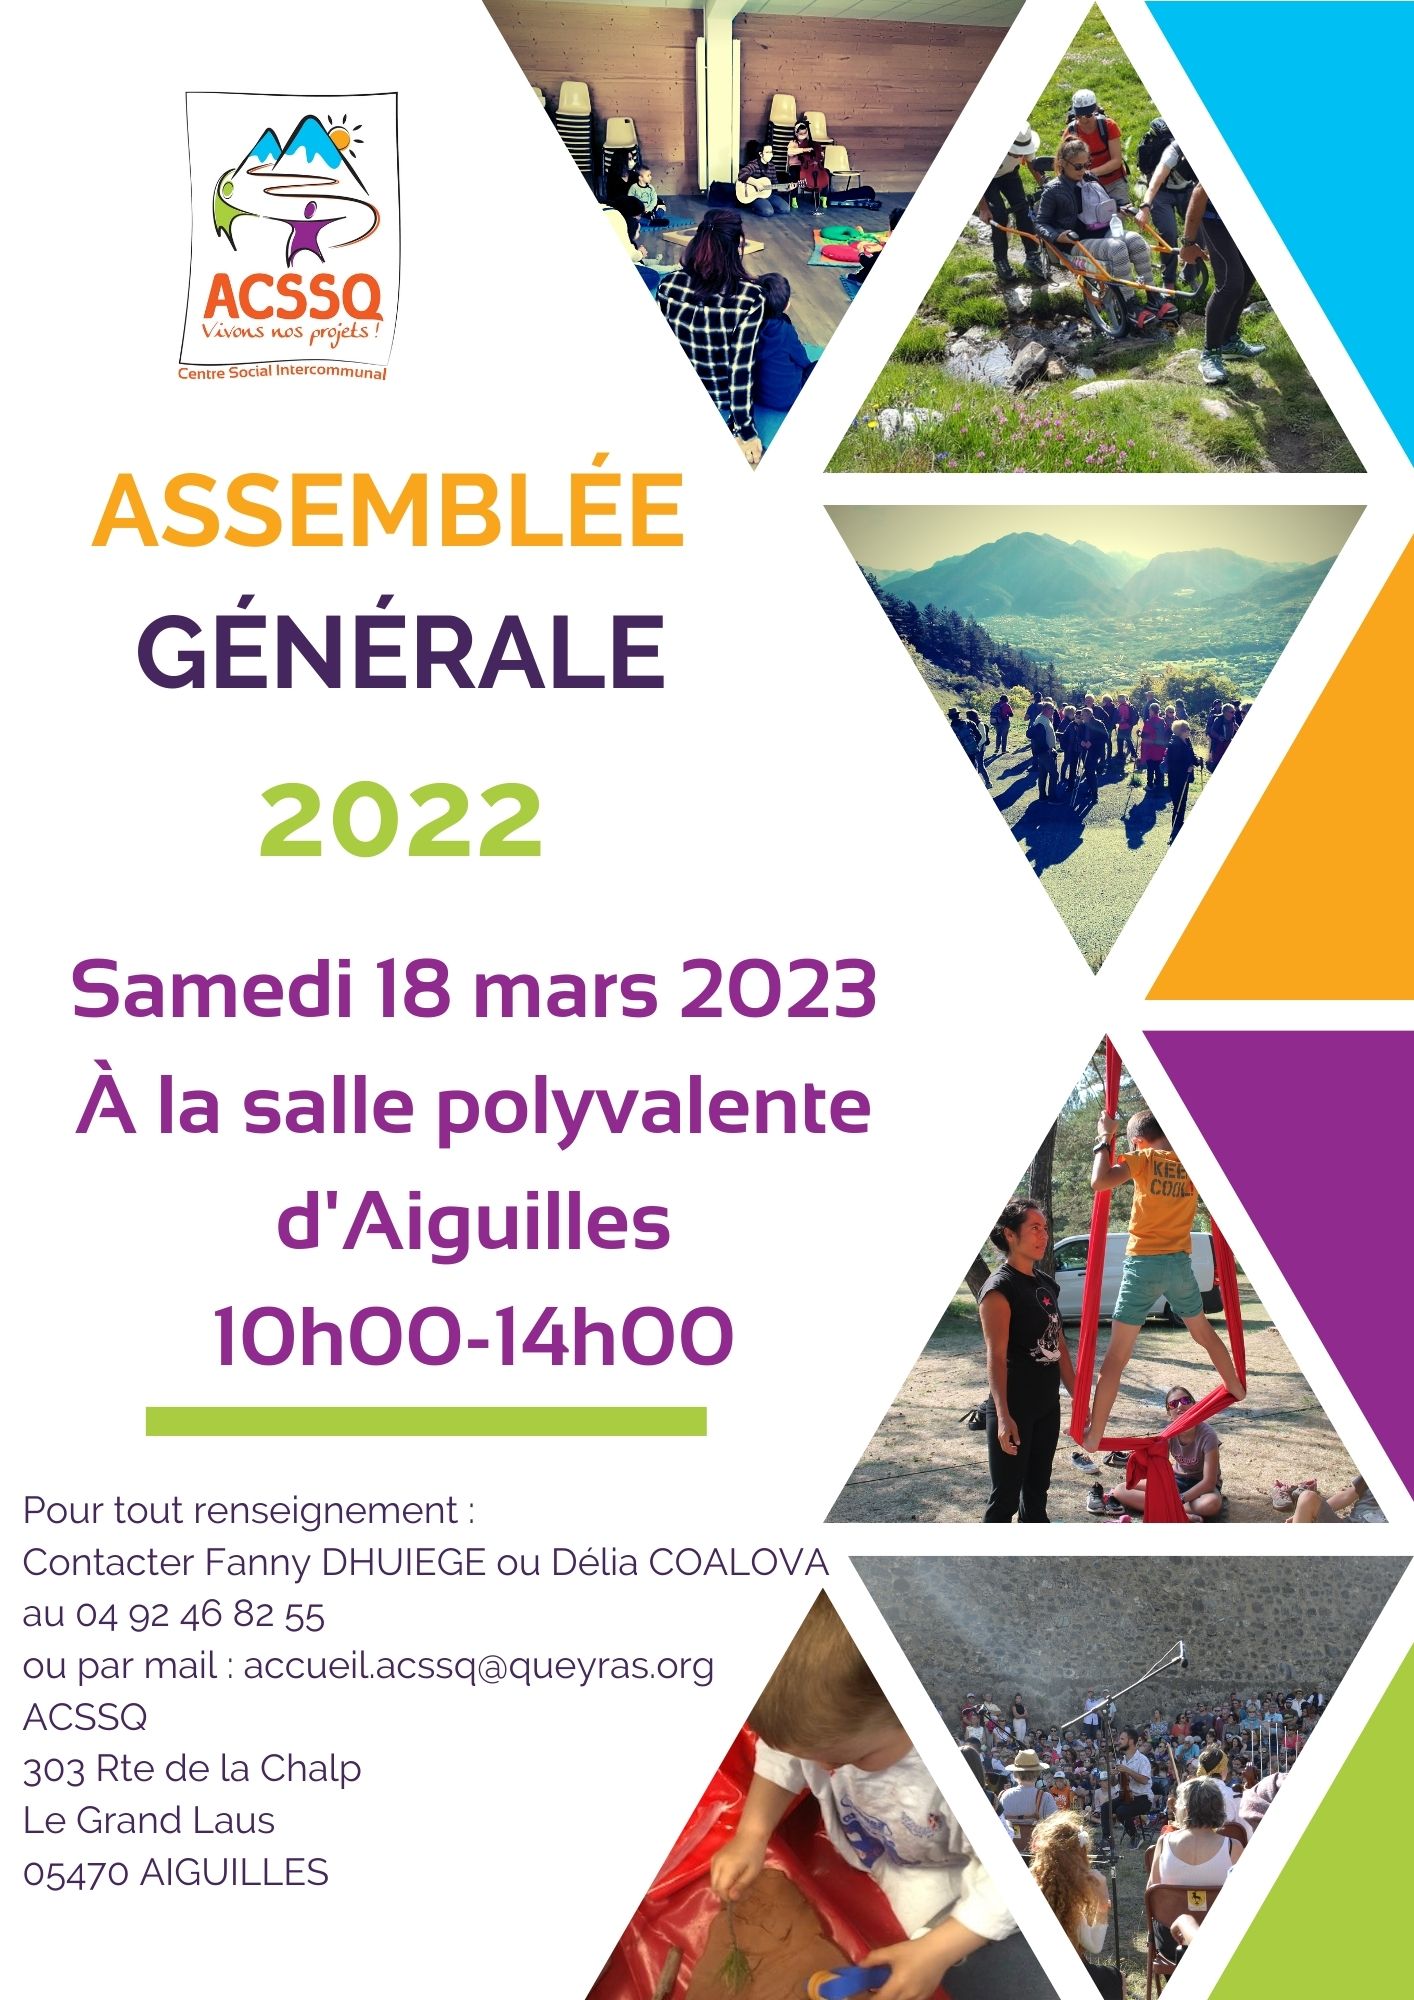 Assemblée générale ordinaire et extraordinaire 2022 – Samedi 18 mars 2023